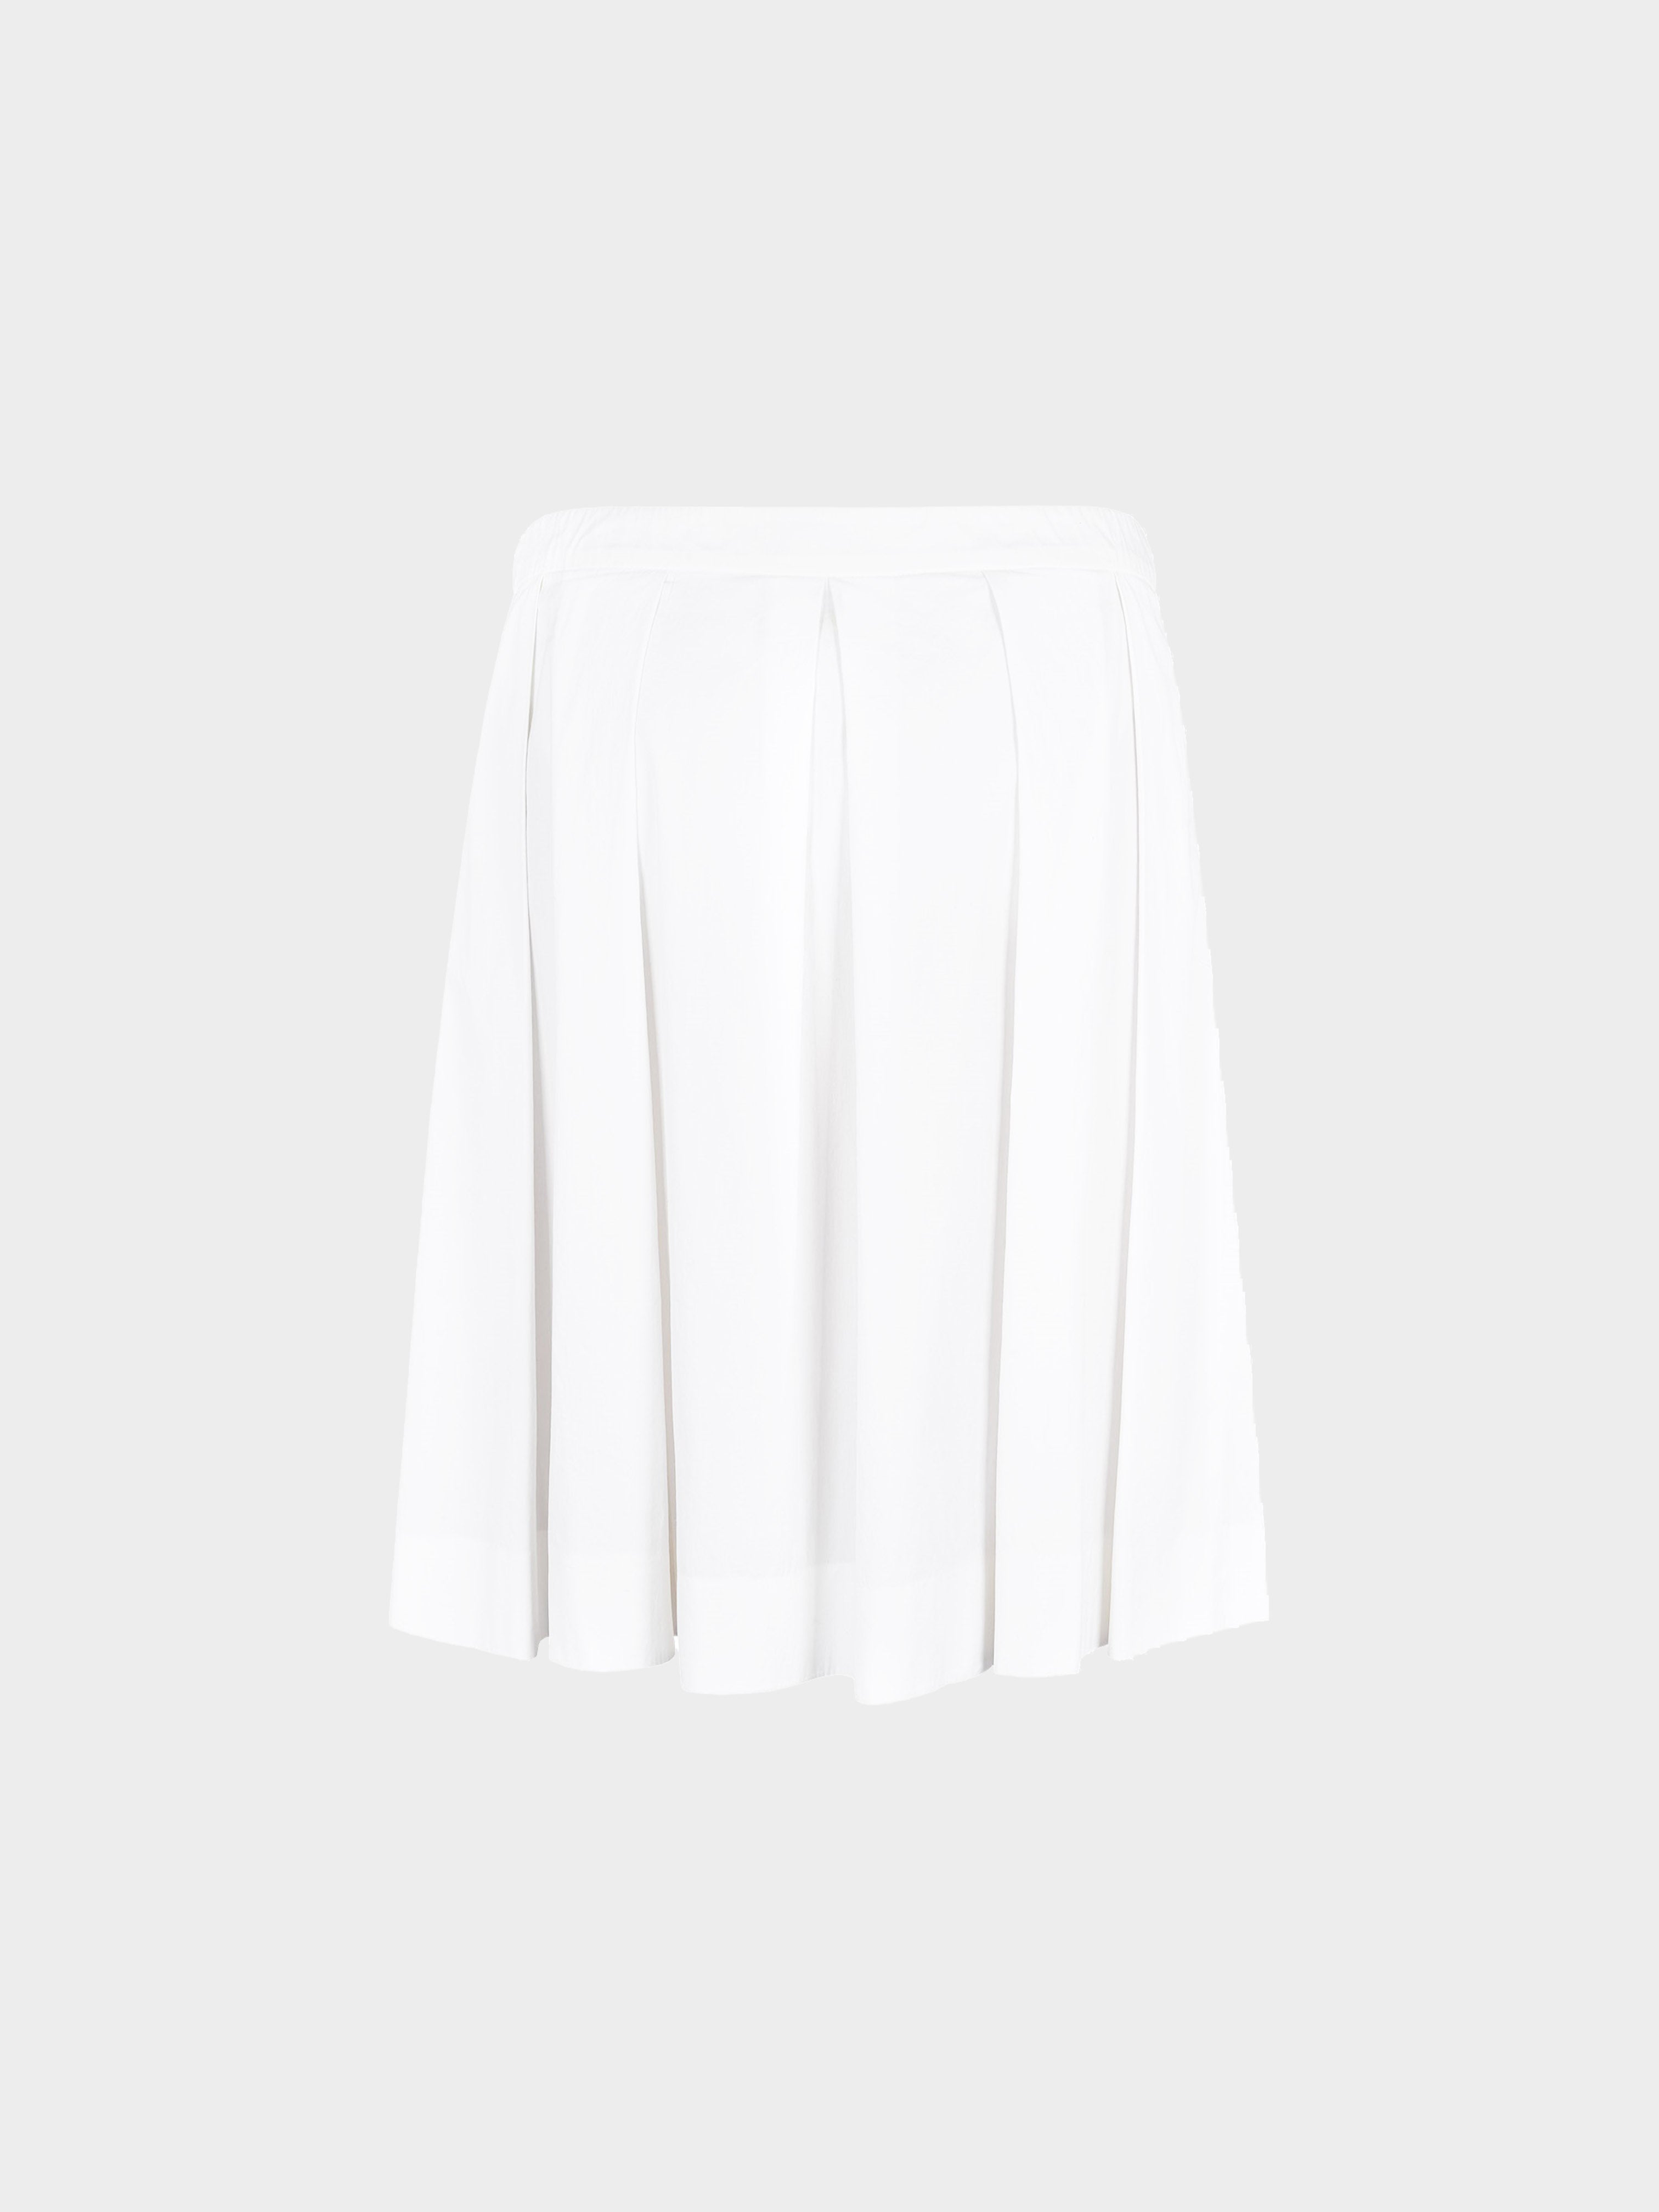 Moschino Cheap and Chic 2010s White Spray Paint Skirt